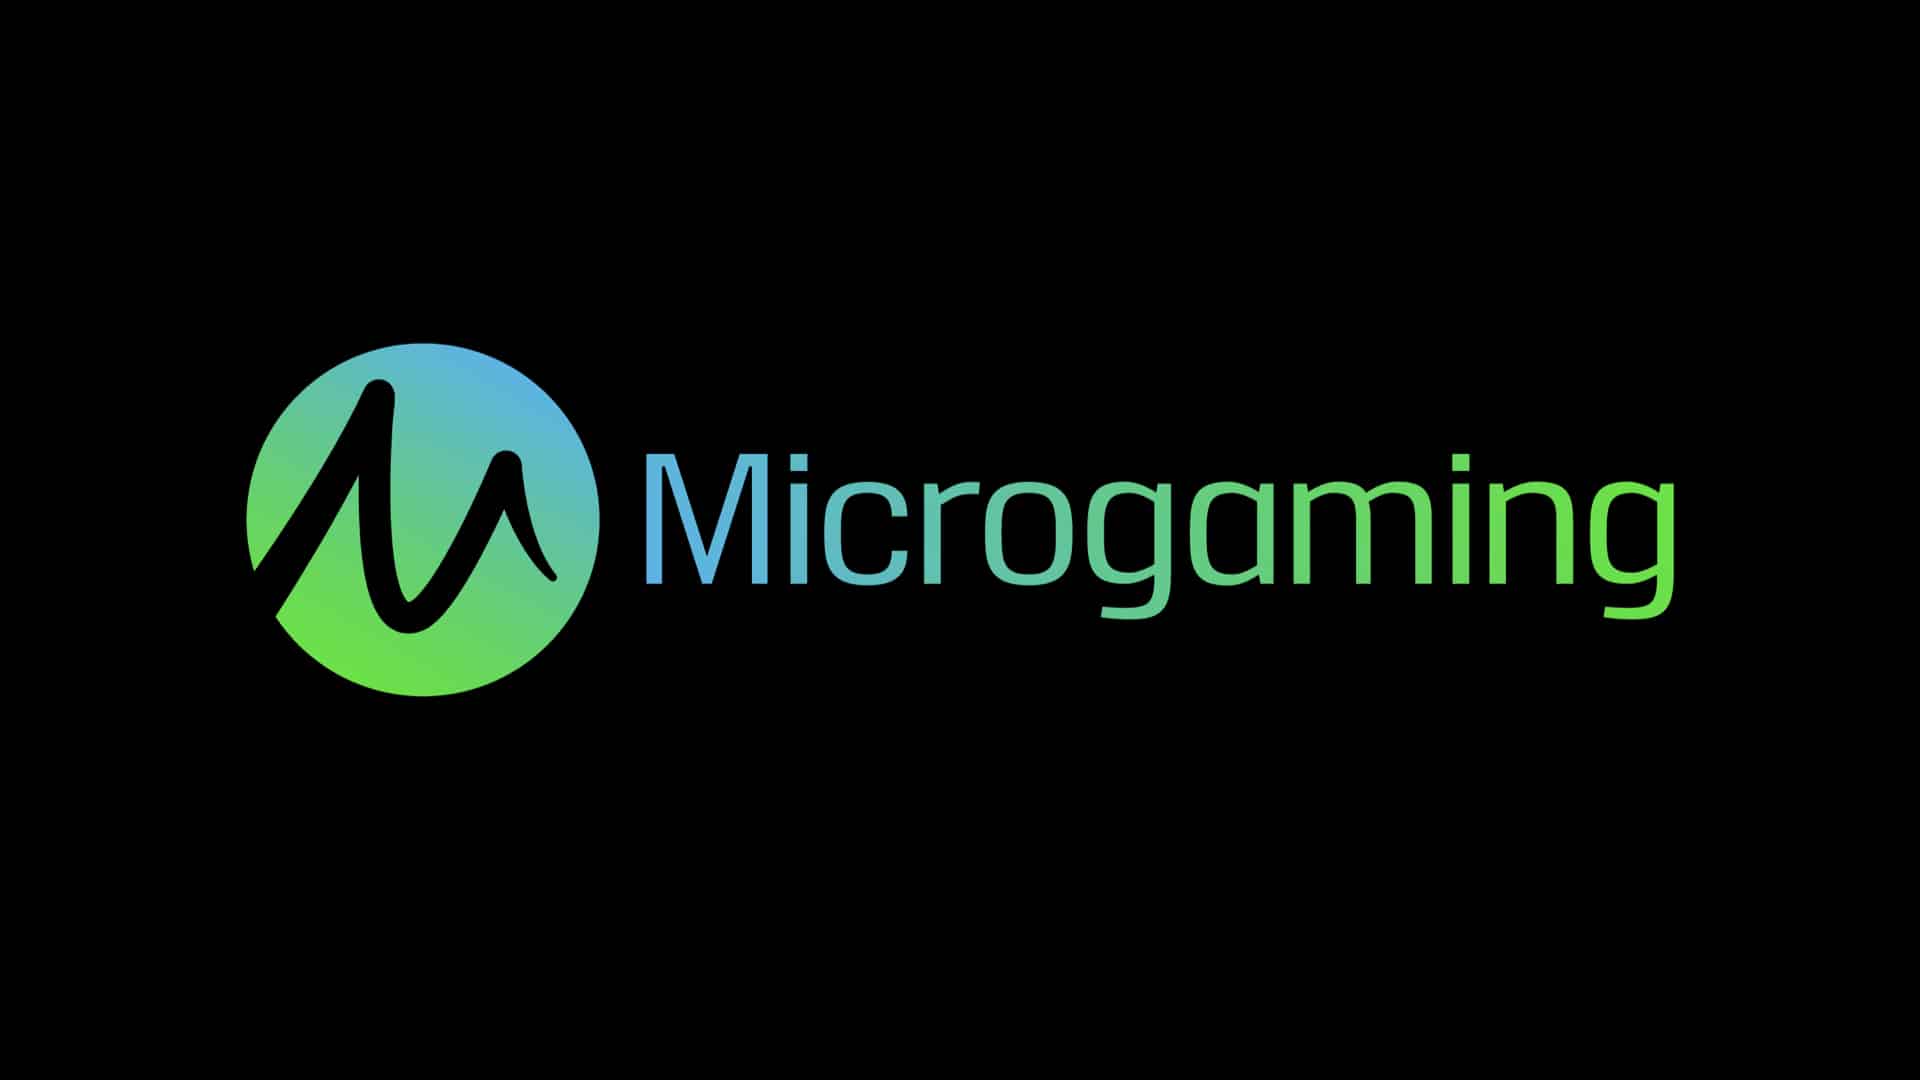 Microgaming adalah sebuah perusahaan perangkat lunak judi online